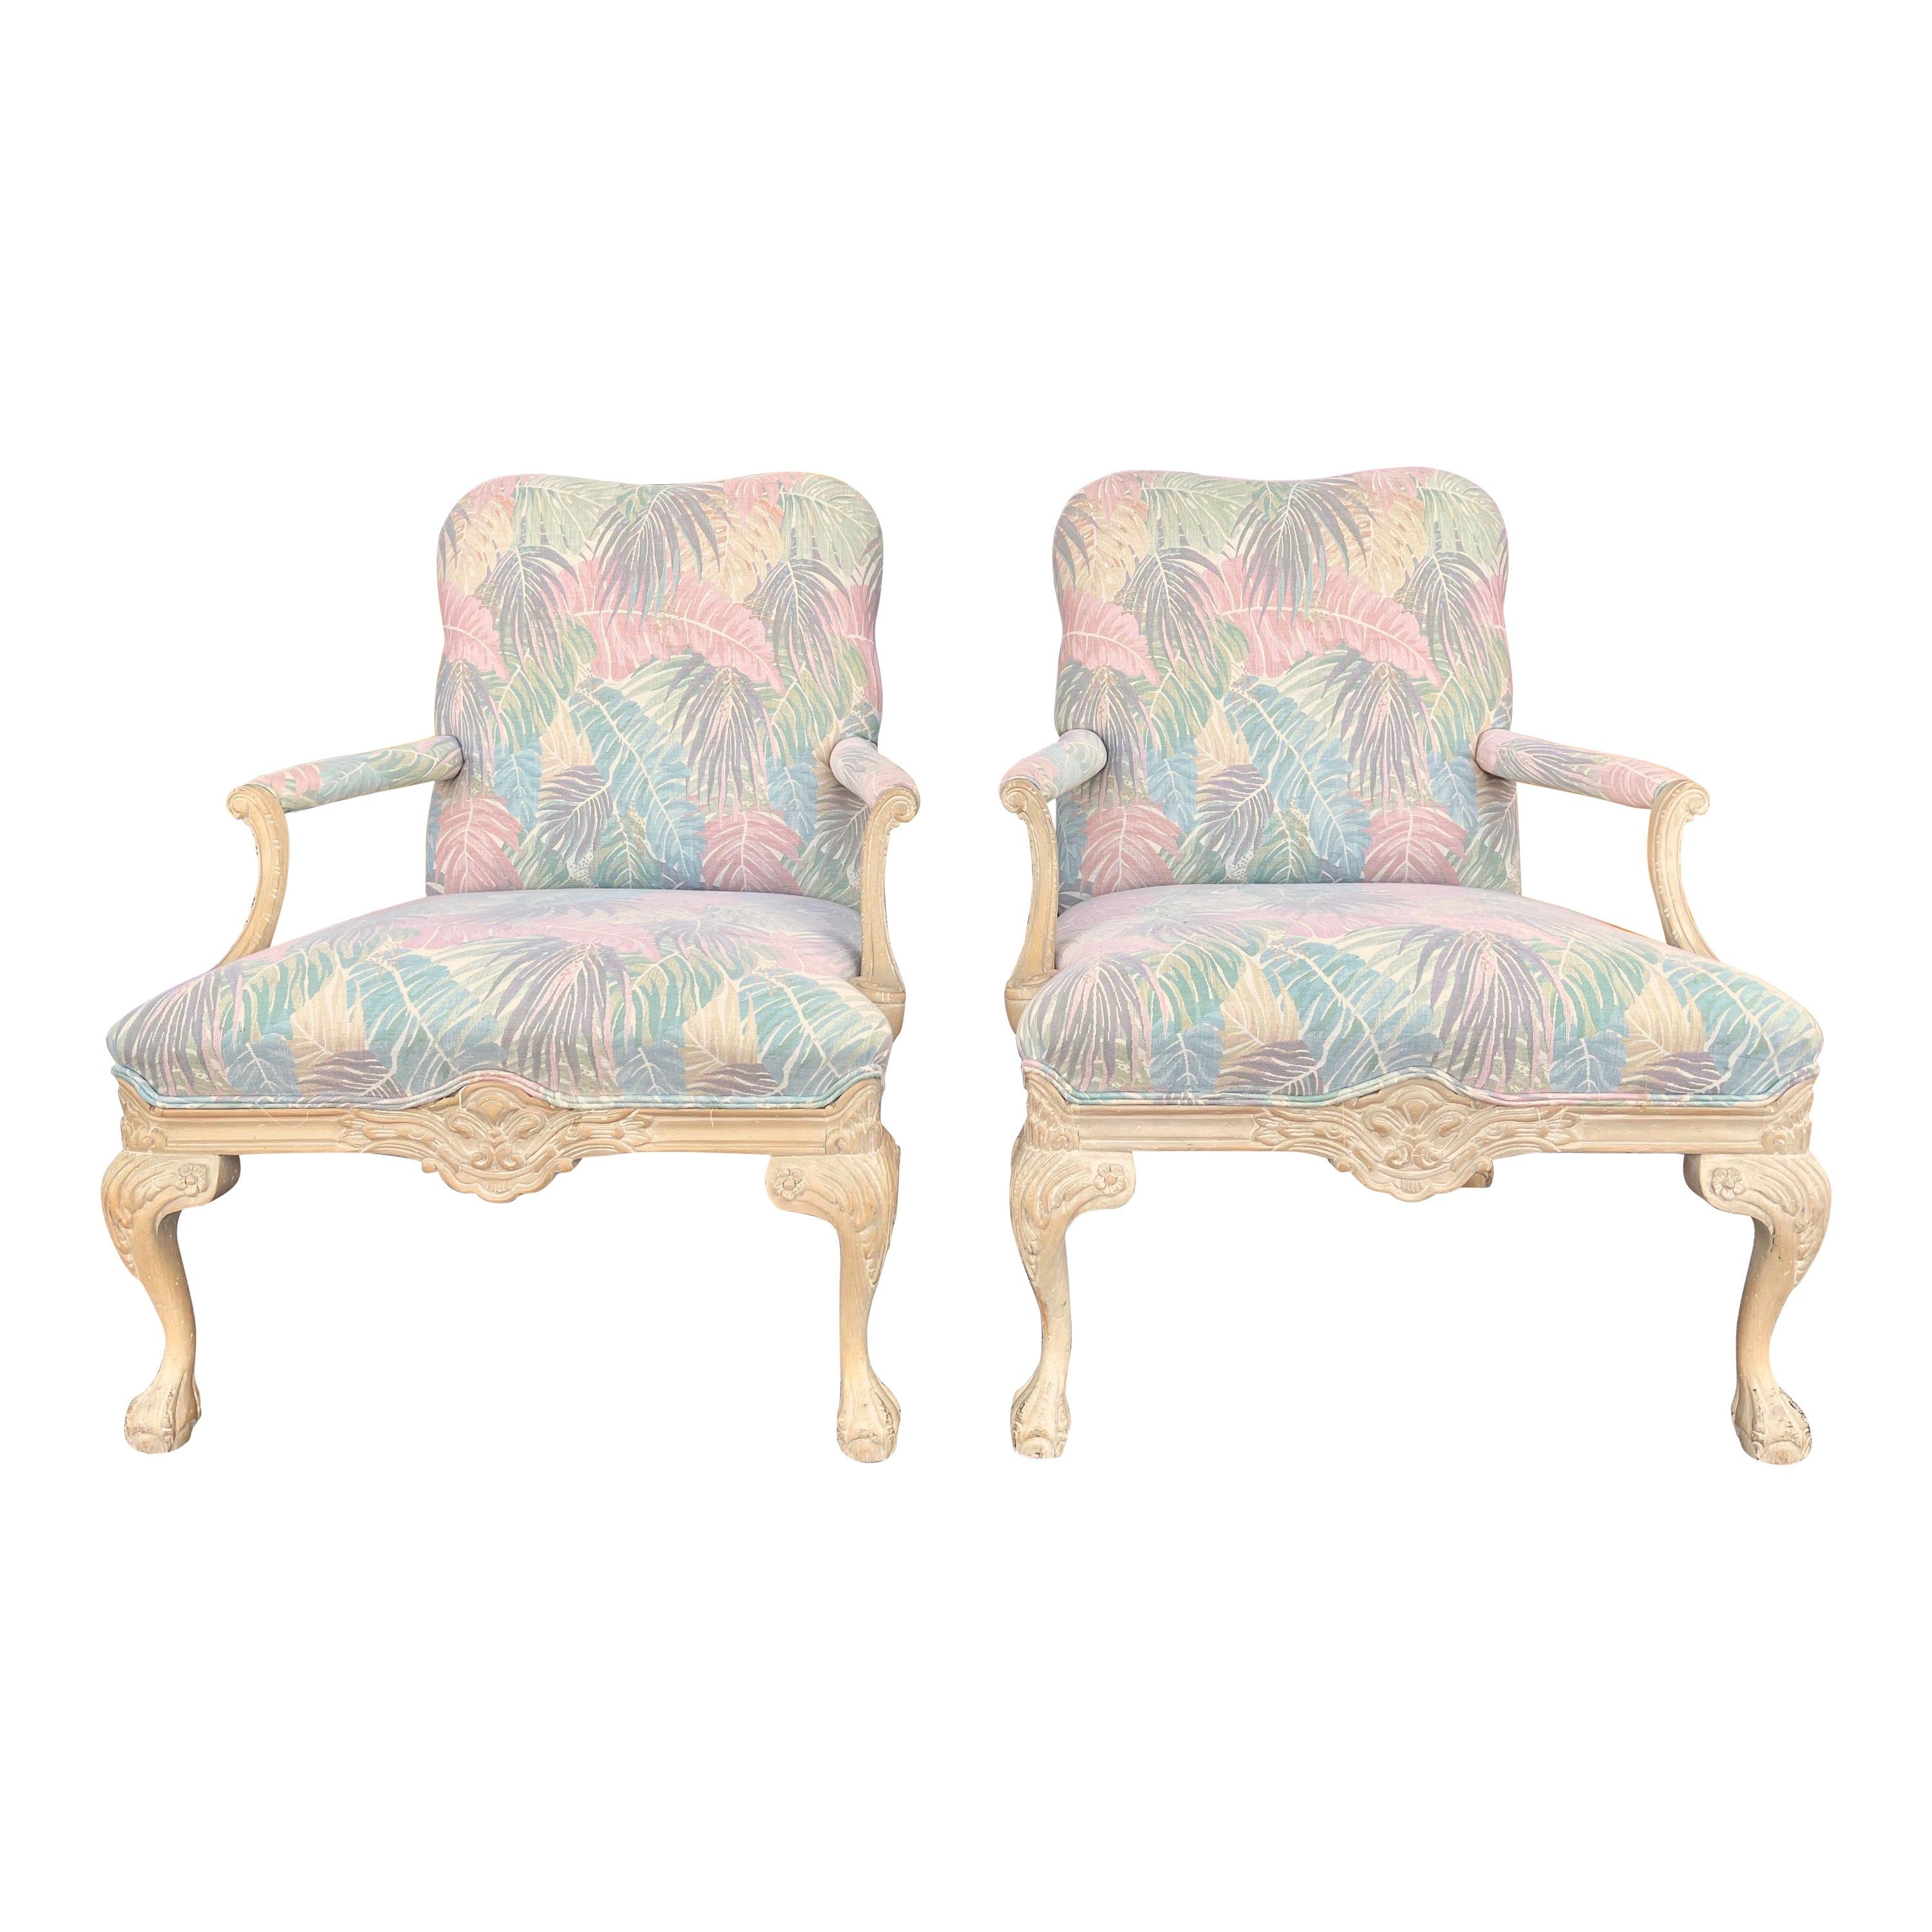 Ein Paar Bergere-Sessel im Coastal-Stil im Vintage-Stil von Sherrill Furniture. C 1980er Jahre